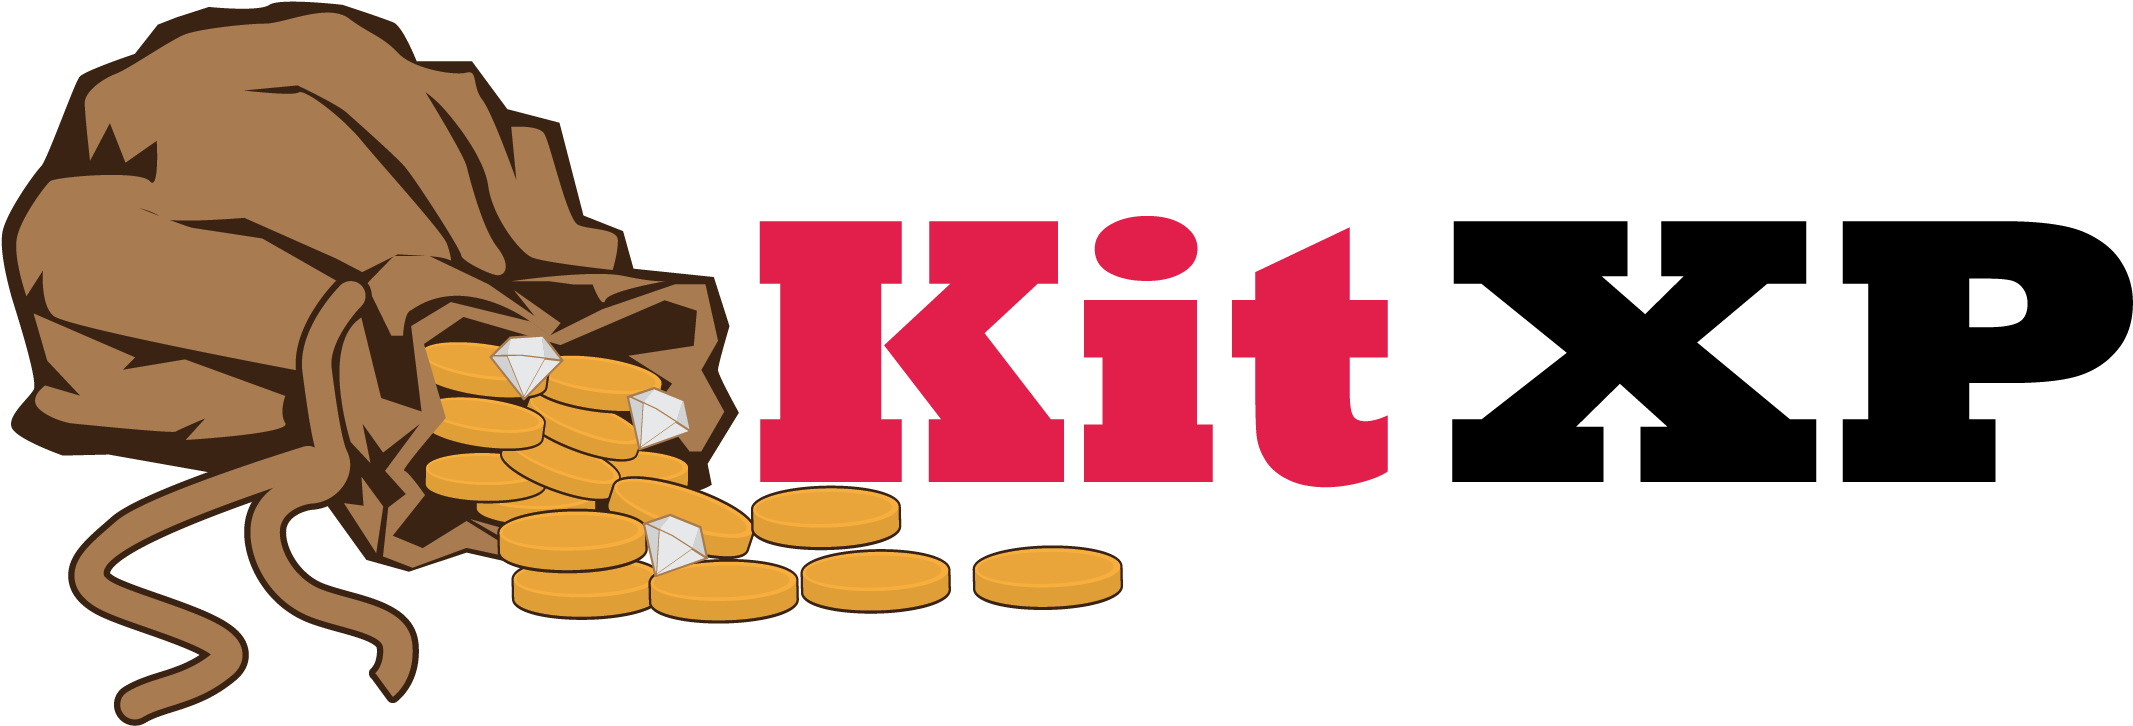 Kit Xp Kit Xp - Cookie Cutter (2829x1000)